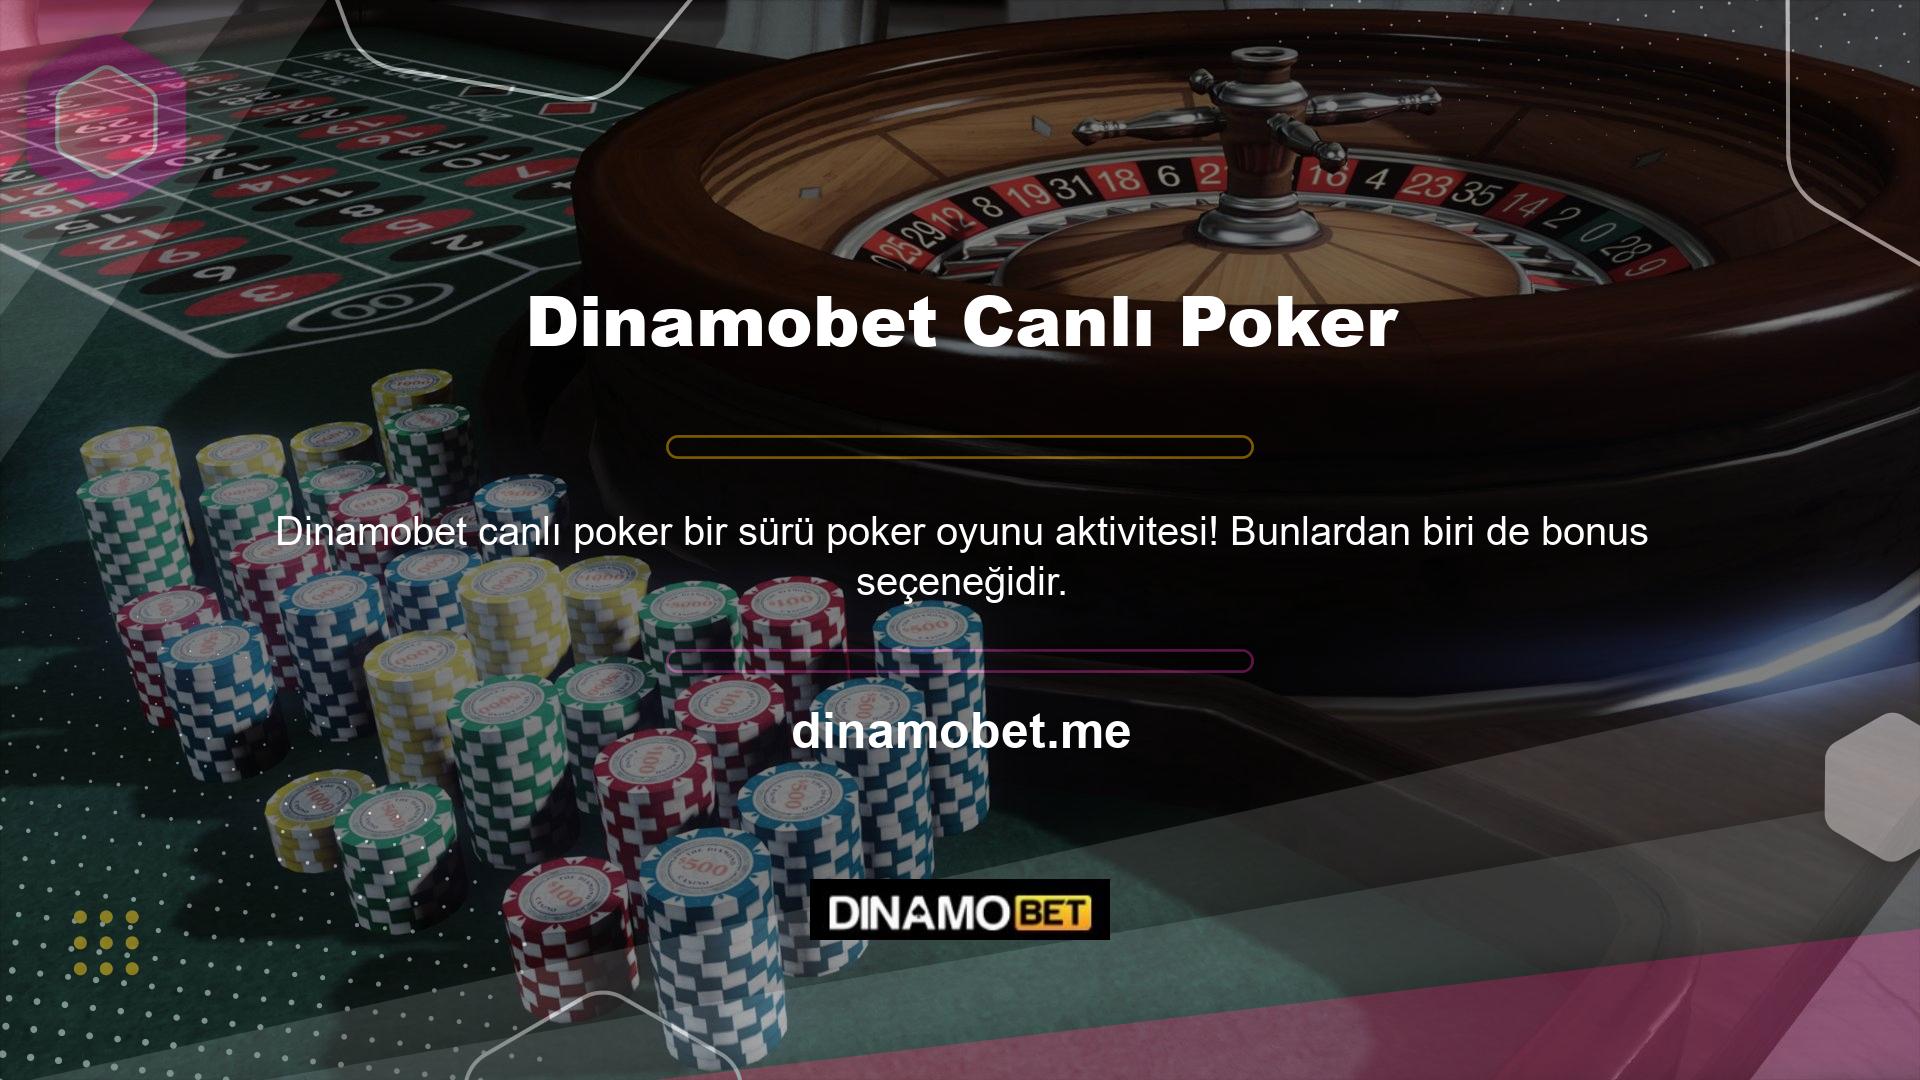 Sürpriz hediyeler ve özel bonuslar kazanma şansı için casino sitelerinde poker oyunları oynayın